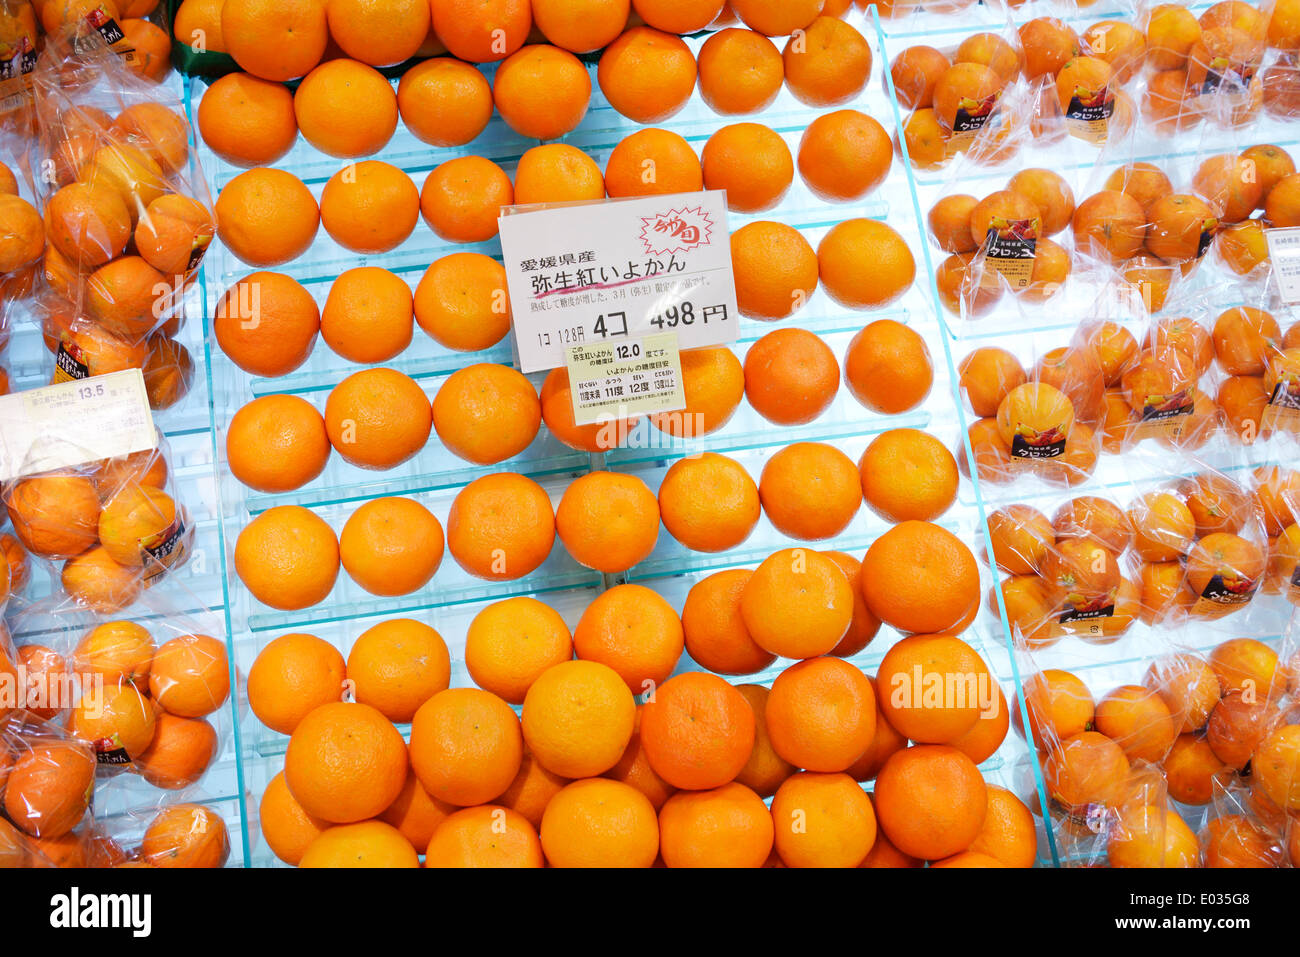 Obst, Orangen auf dem Display in einem japanischen Supermarkt. Tokio, Japan. Stockfoto